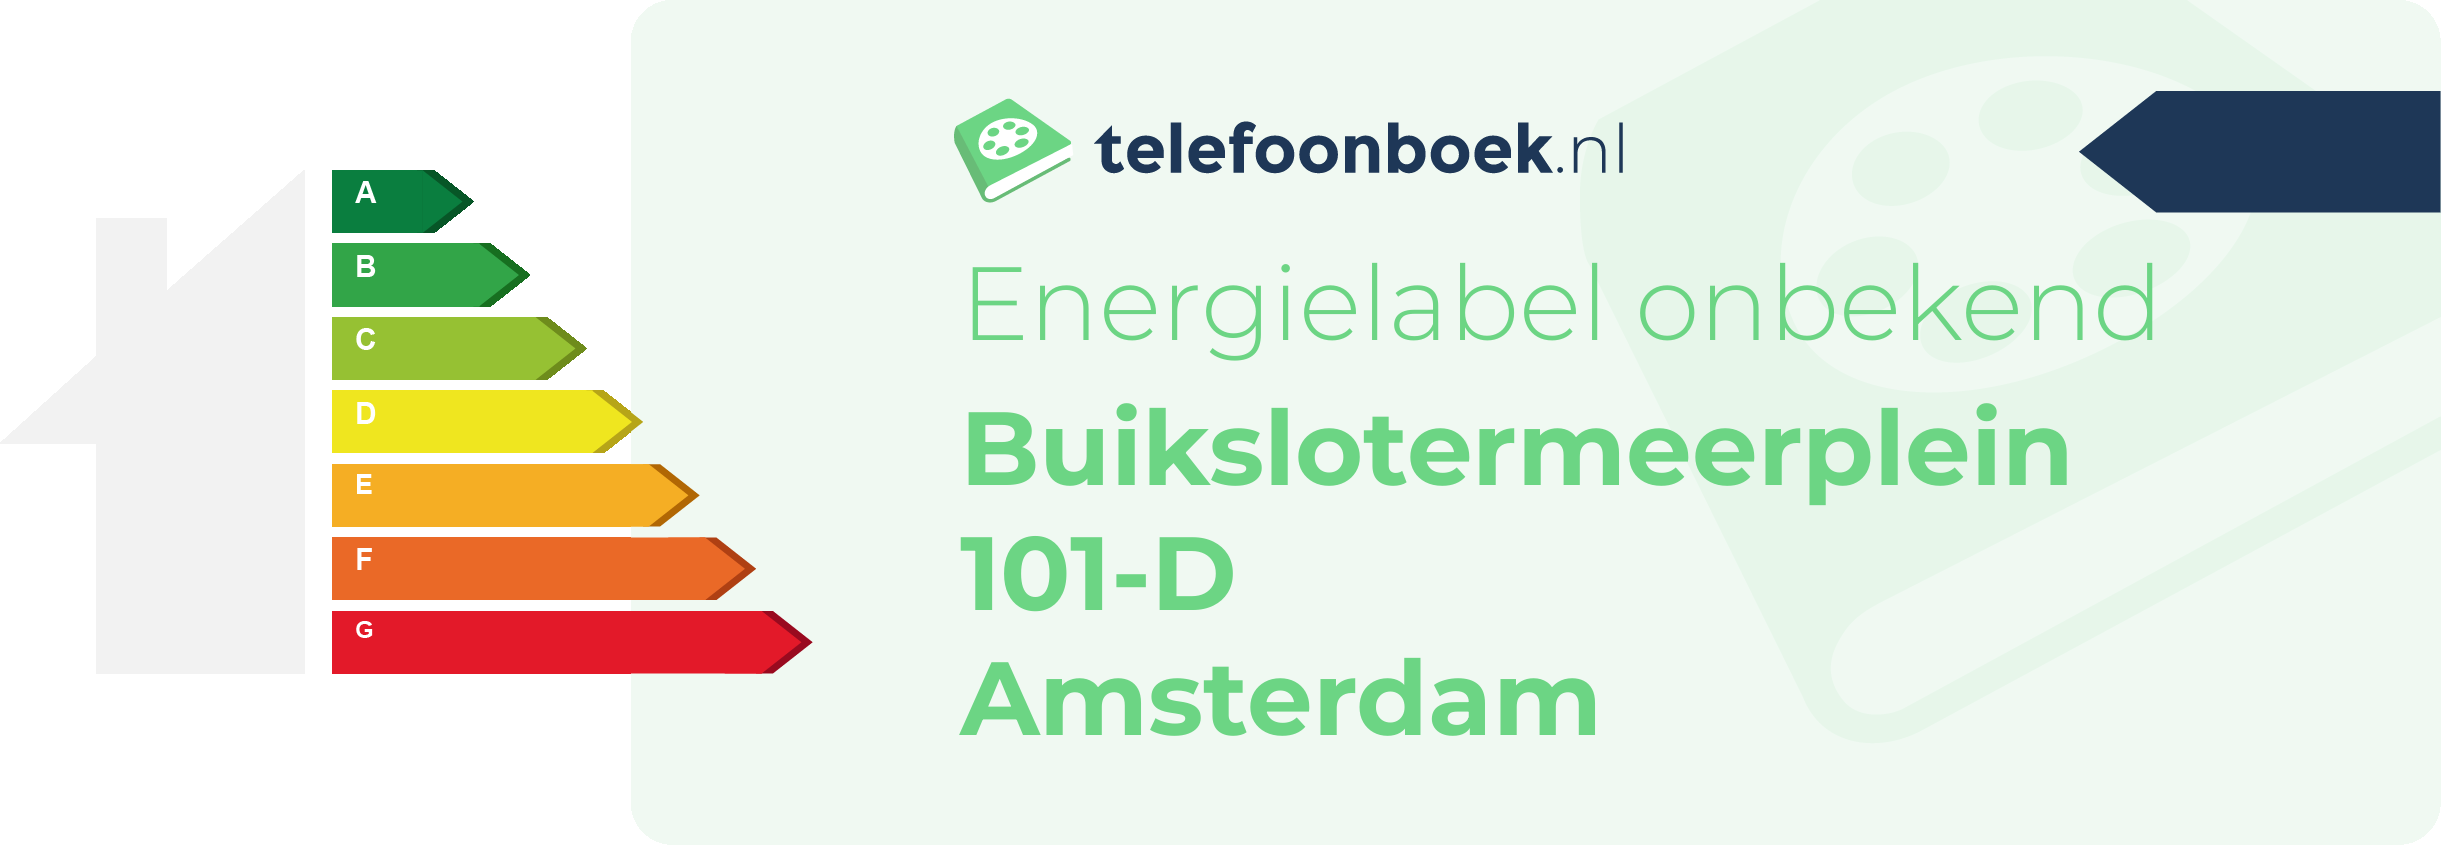 Energielabel Buikslotermeerplein 101-D Amsterdam